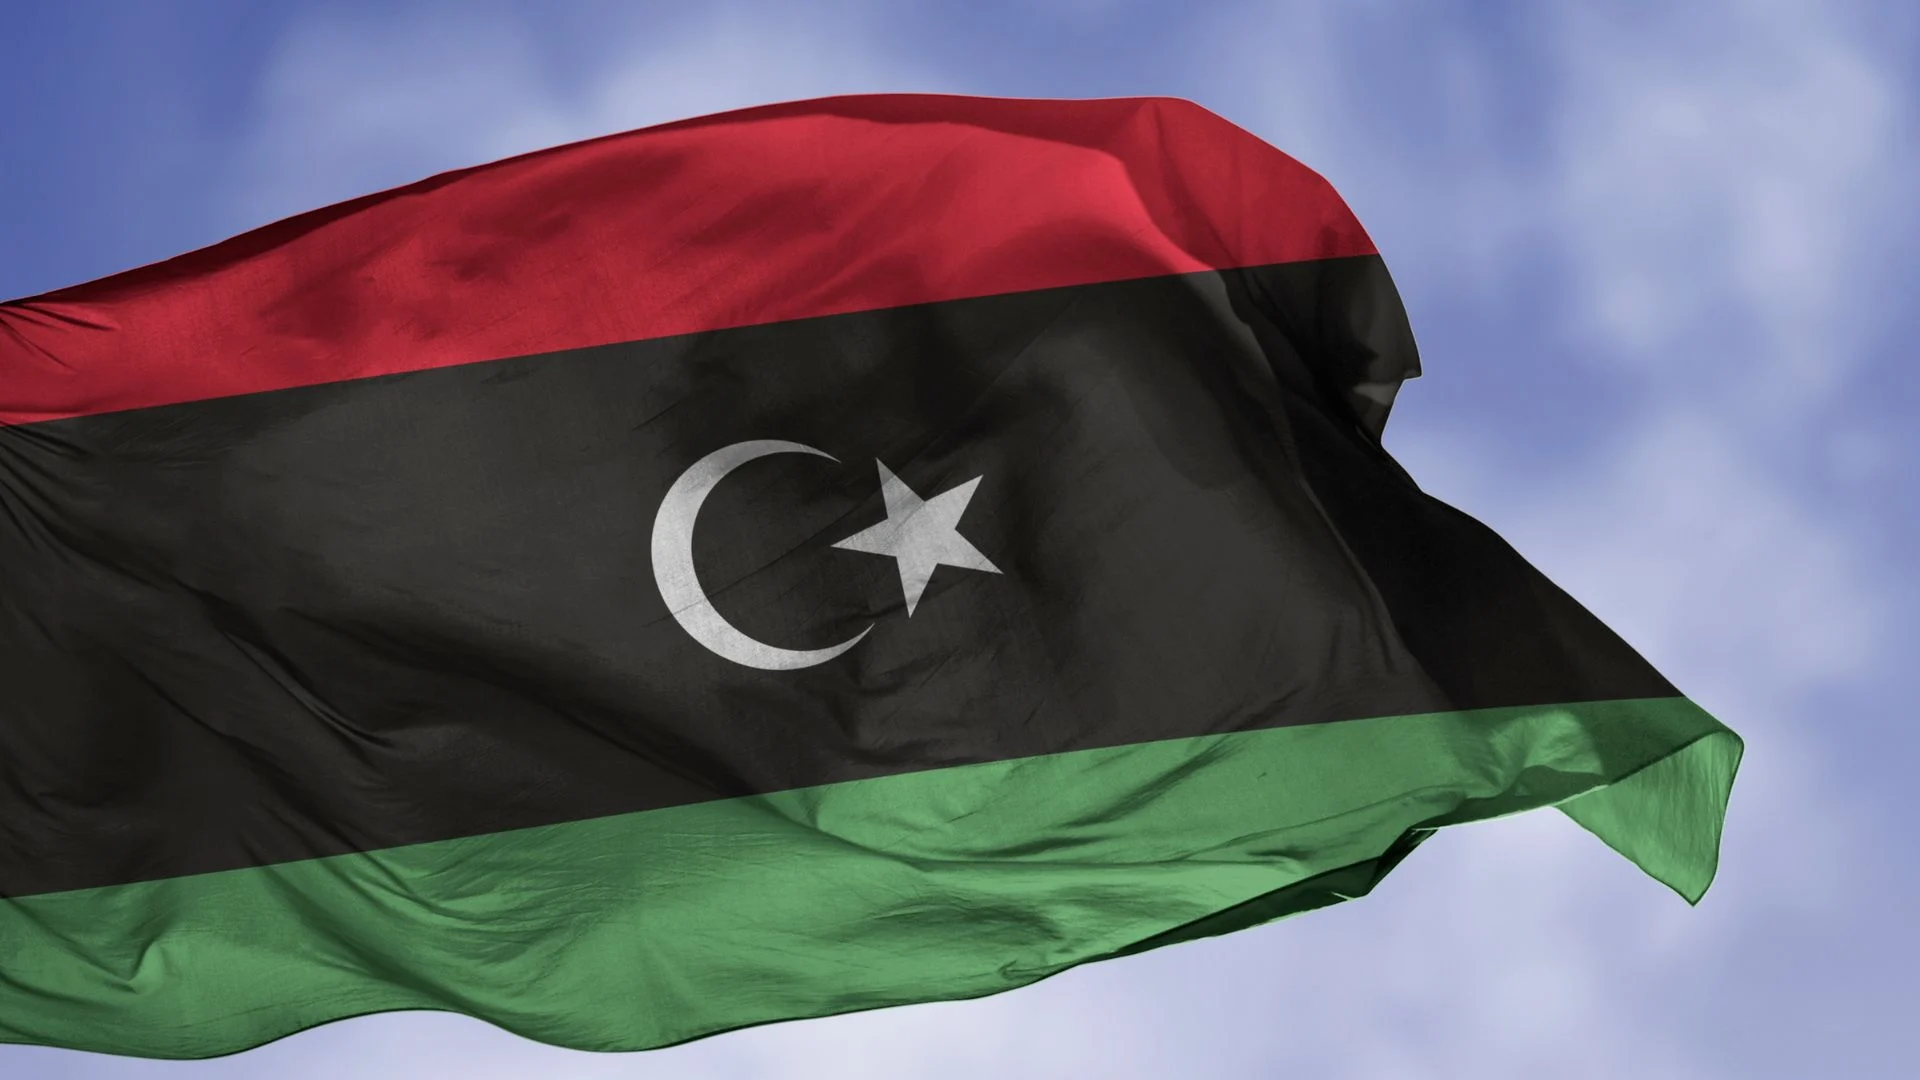 Λιβύη: Στα 12 μίλια τα χωρικά της ύδατα, 24 μίλια η συνορεύουσα ζώνη – Δεν ανησυχεί η Ελλάδα